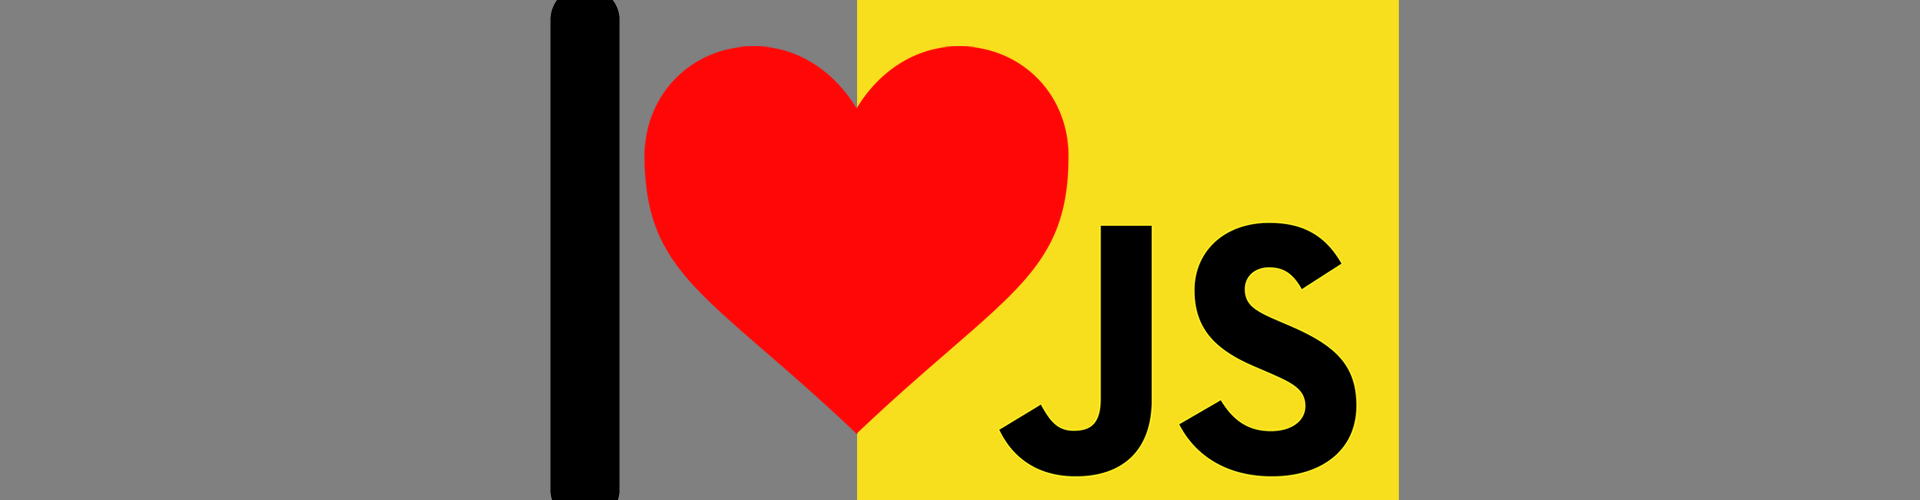 I love Javascript